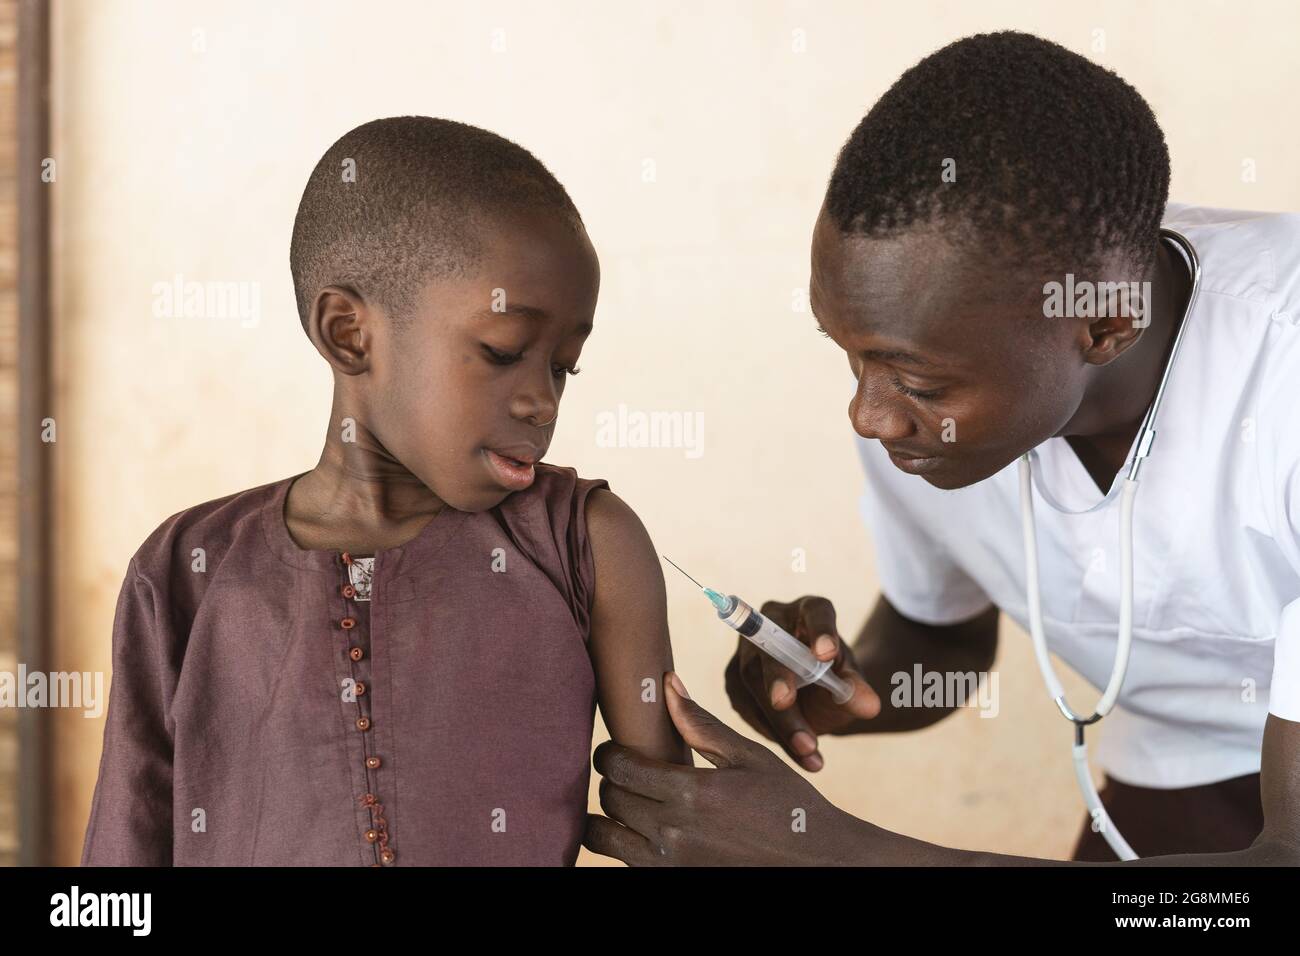 C'est l'image d'un adorable écolier noir africain qui a reçu son premier vaccin contre l'épaule par un médecin africain. Banque D'Images